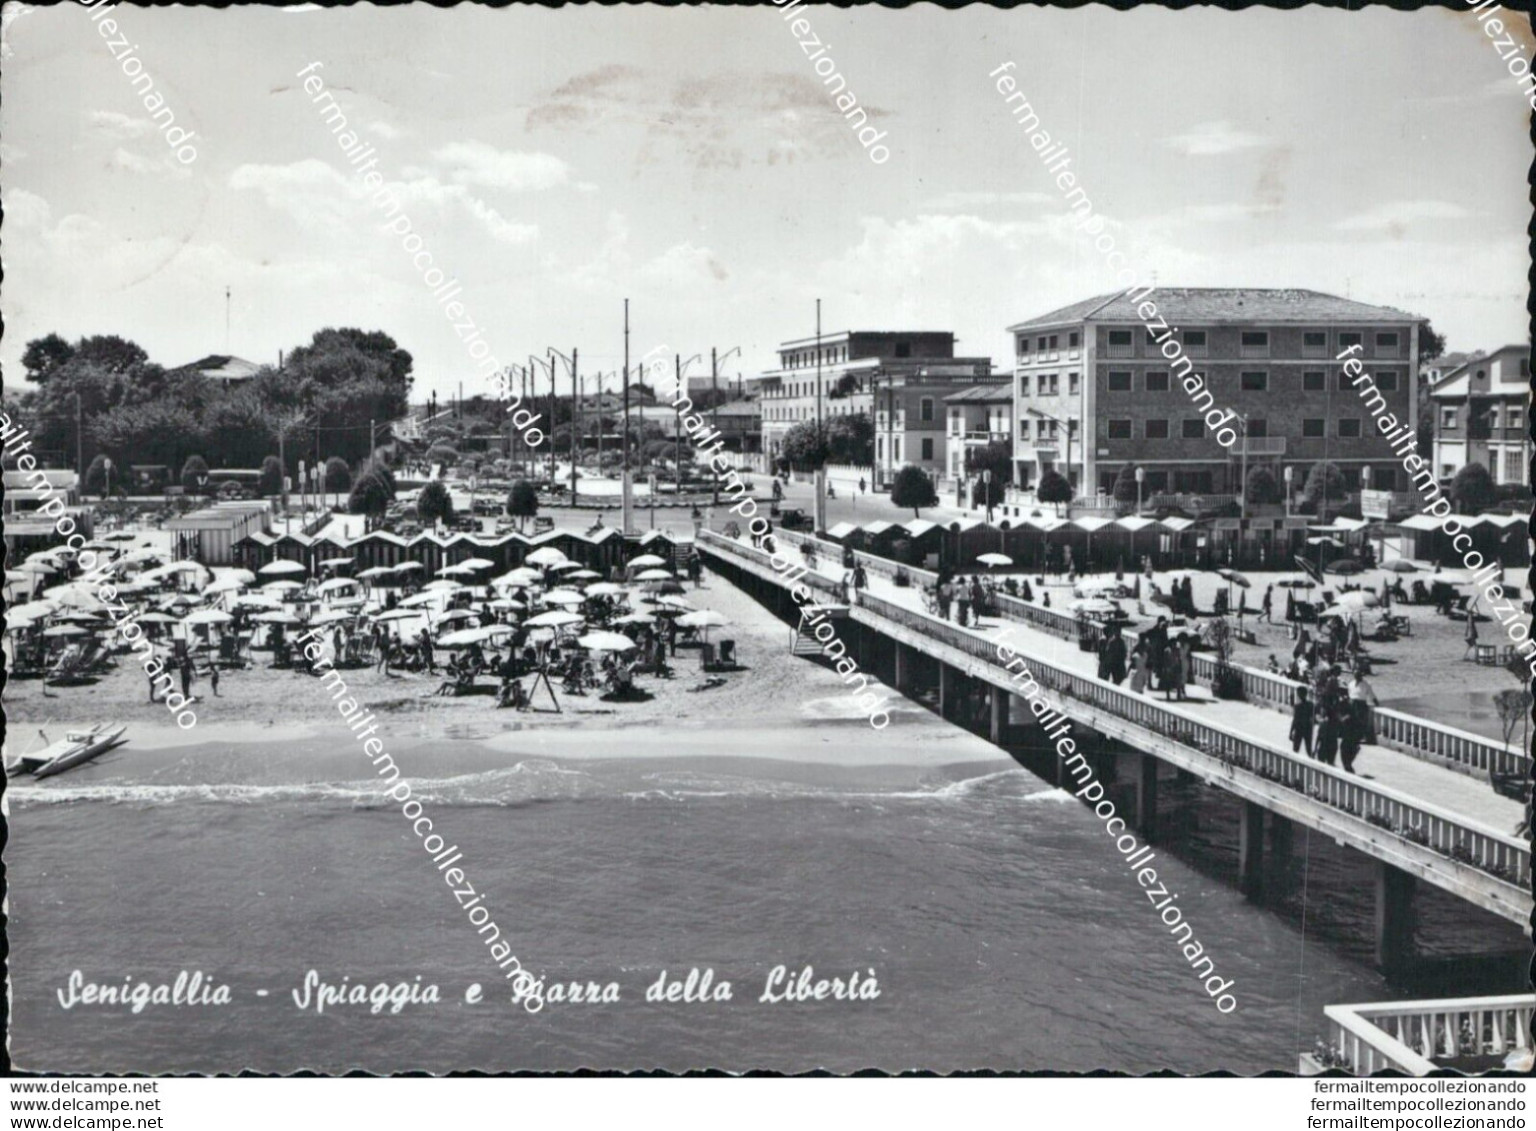 At367 Cartolina Senigallia Spiaggia E Piazza Della Liberta' - Ancona